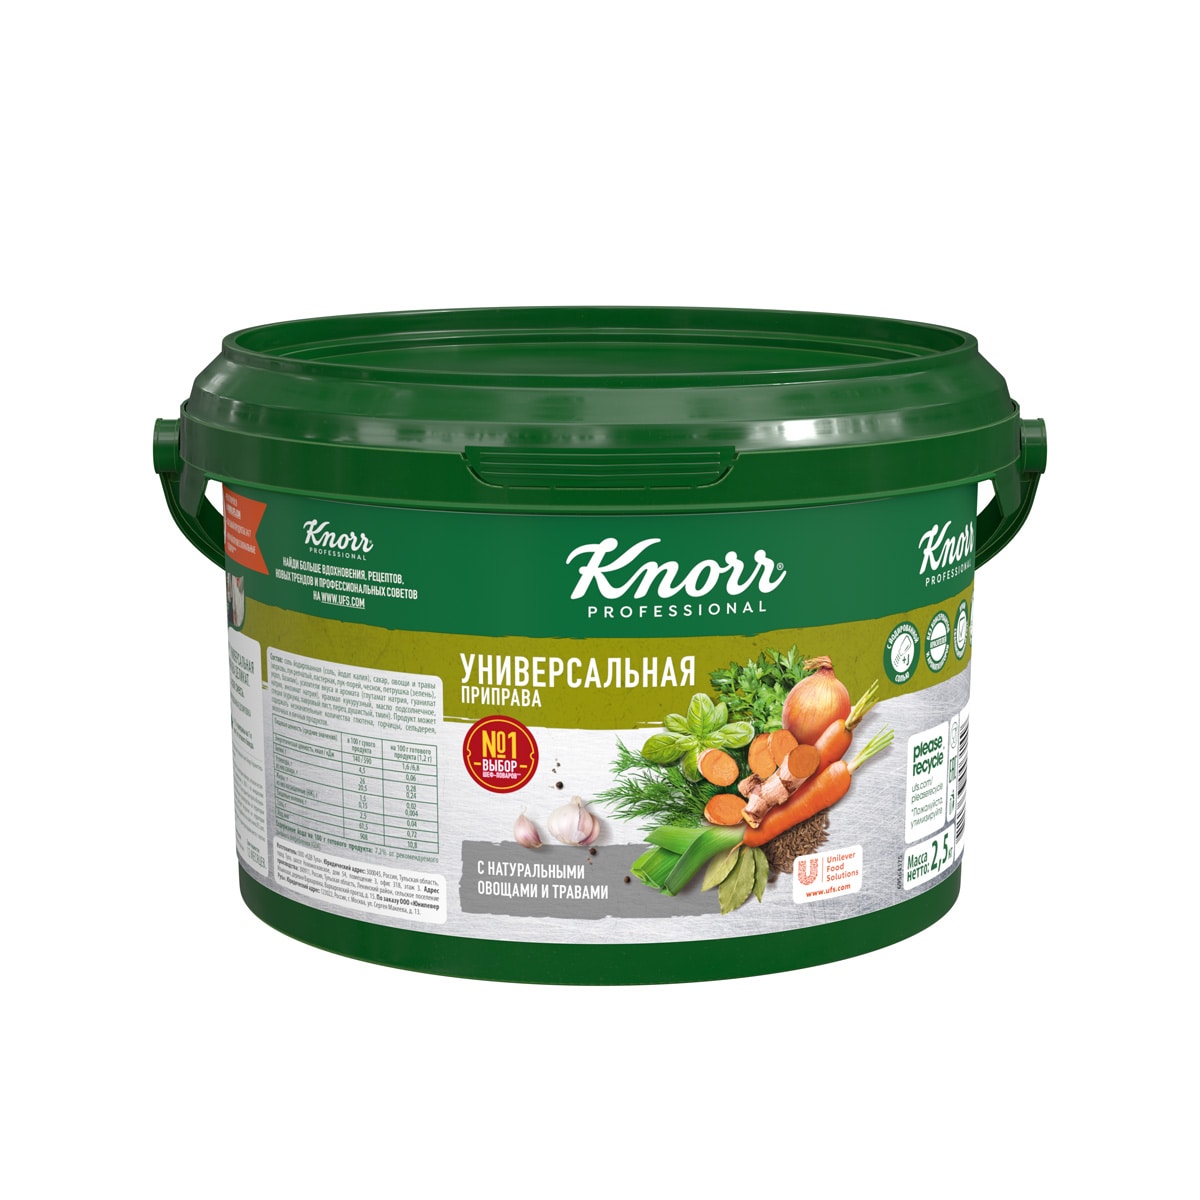 KNORR PROFESSIONAL УНИВЕРСАЛЬНАЯ ПРИПРАВА 2,5 КГ - Knorr Professional Универсальная овощная приправа придаст насыщенный вкус и аромат овощей любому блюду вне зависимости от качества базовых ингредиентов. Идеально подходит для разнообразных блюд: бульонов и супов, соусов и маринадов, салатов и гарниров, при жарке и тушении.